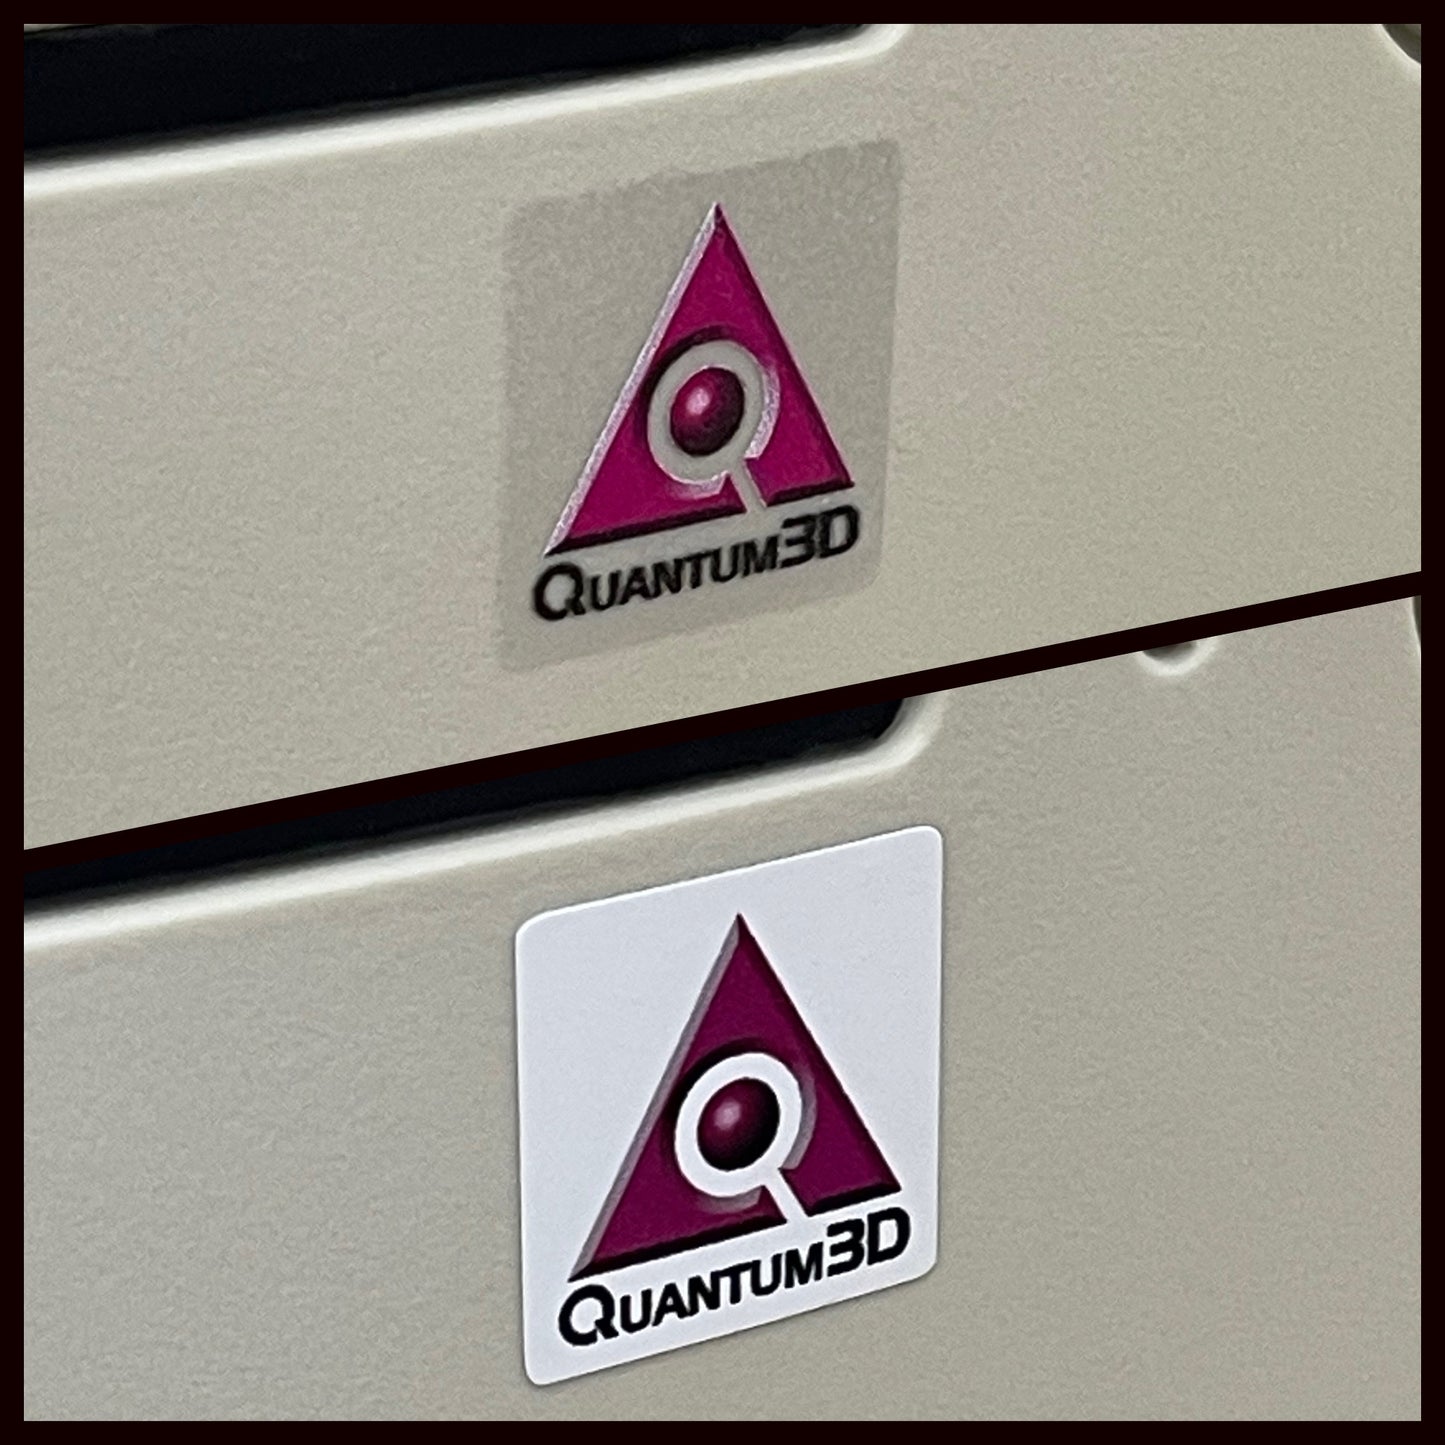 Quantum 3D 3DFx Obsidian2 Case Badge Sticker